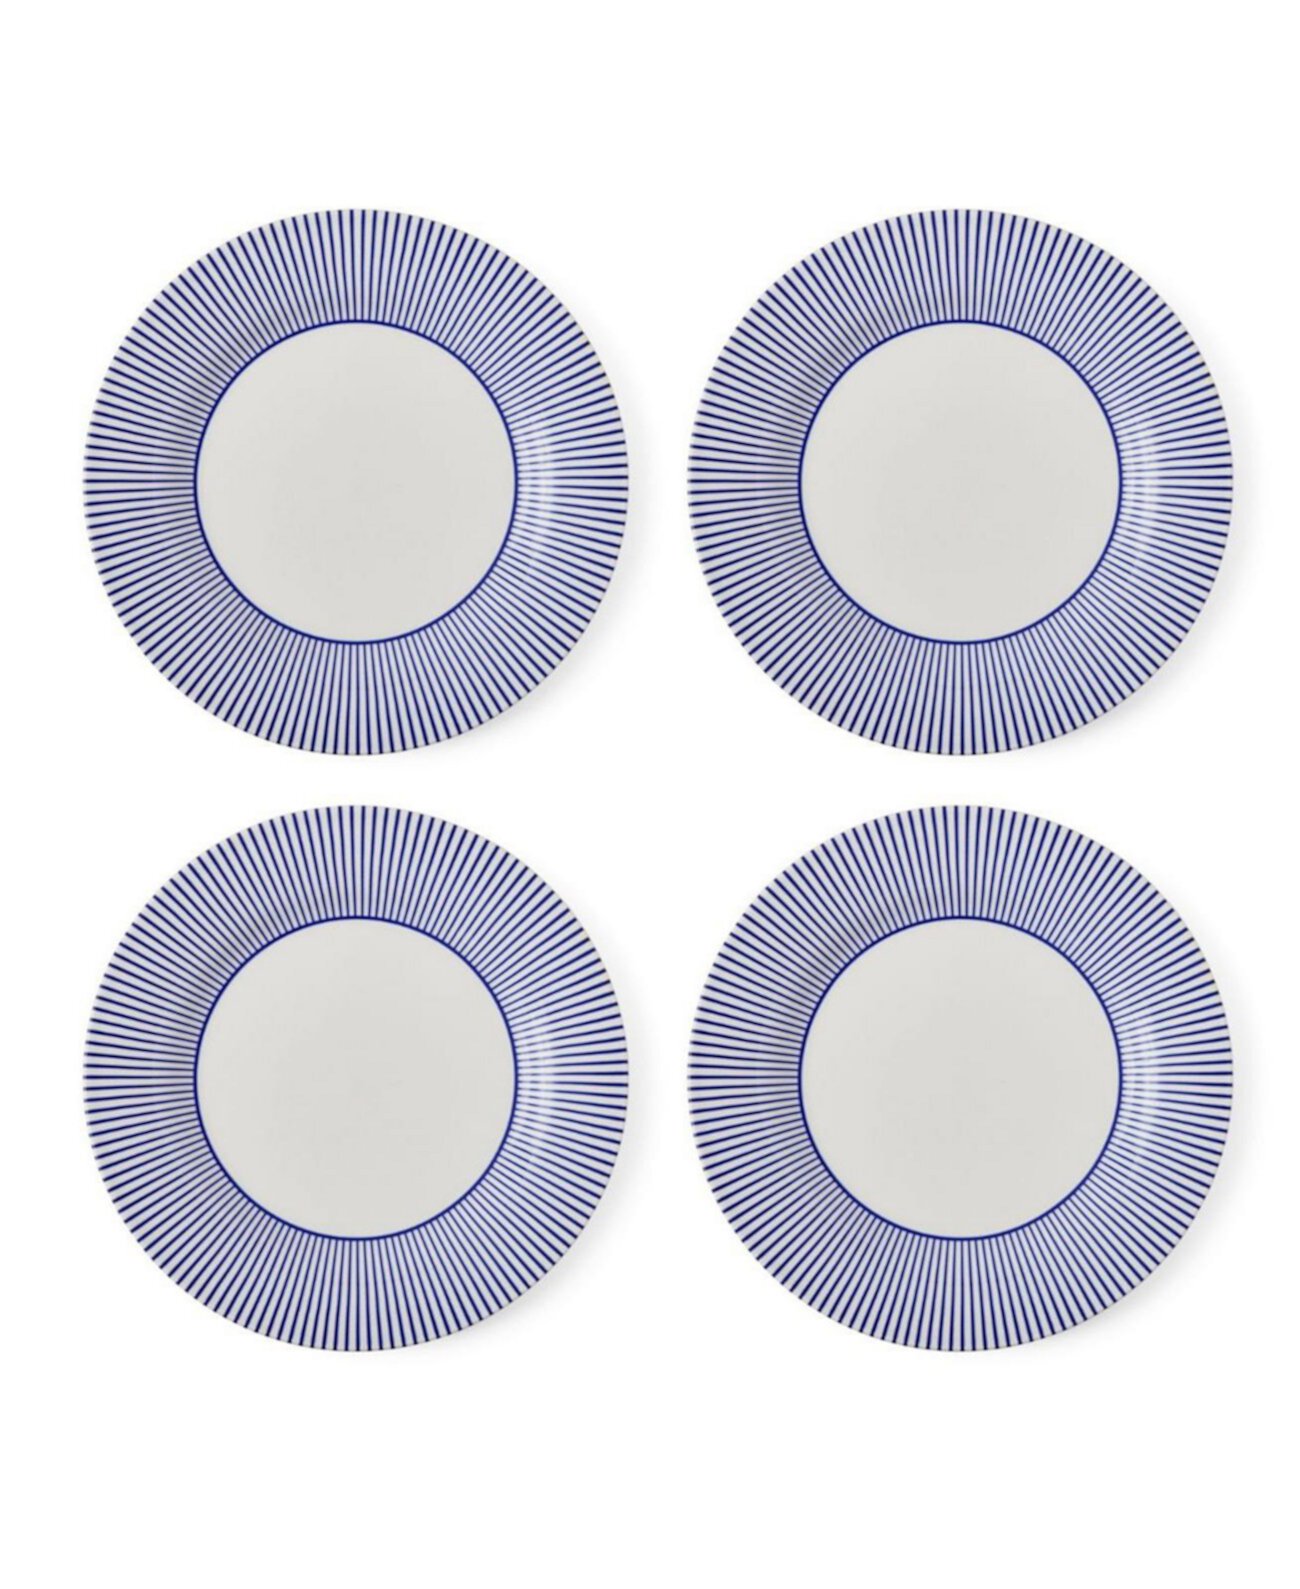 Blue Italian Steccato Dinner Plates, Set of 4 Spode